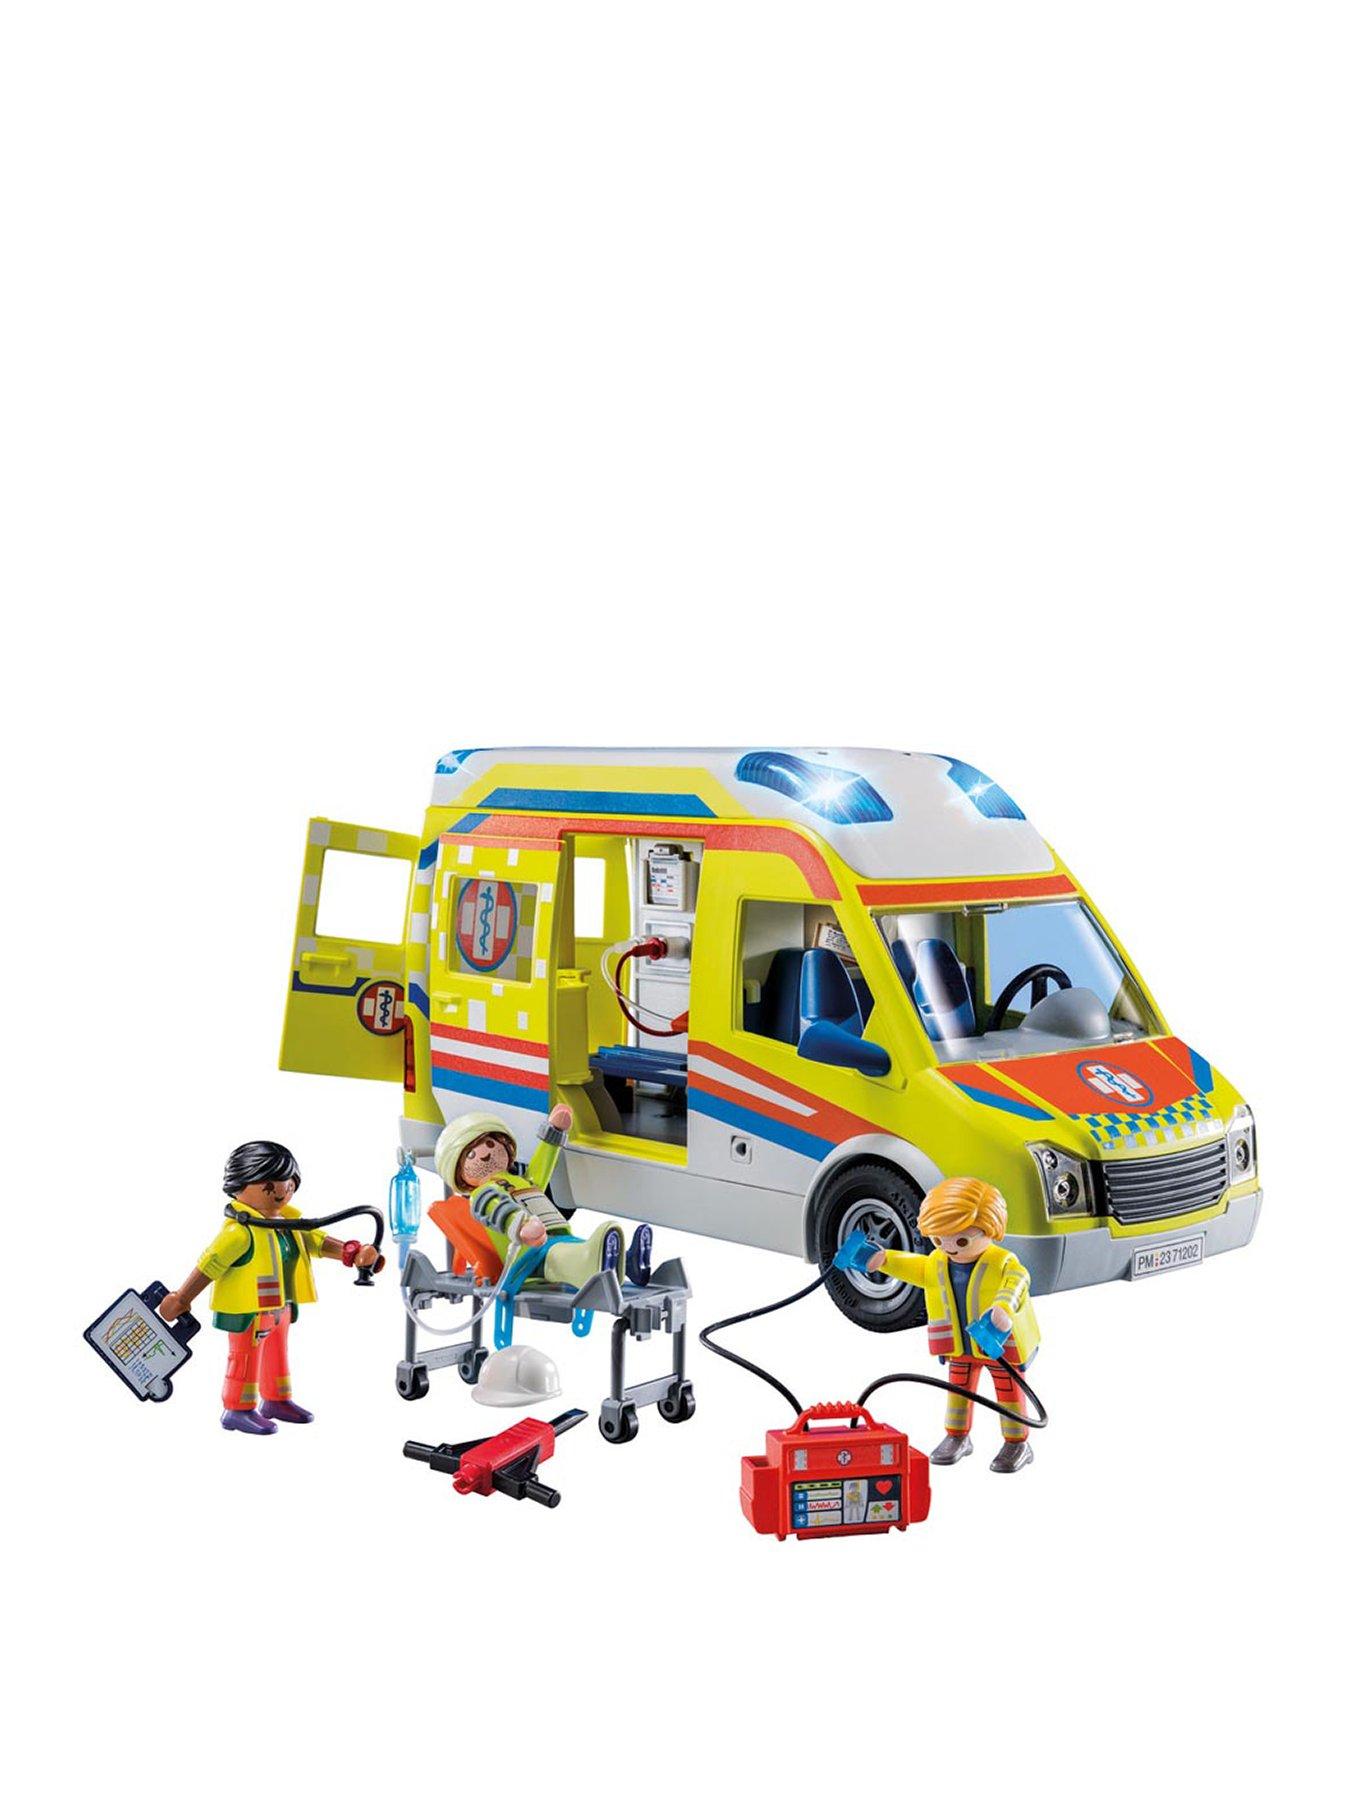 Ambulance - 71202